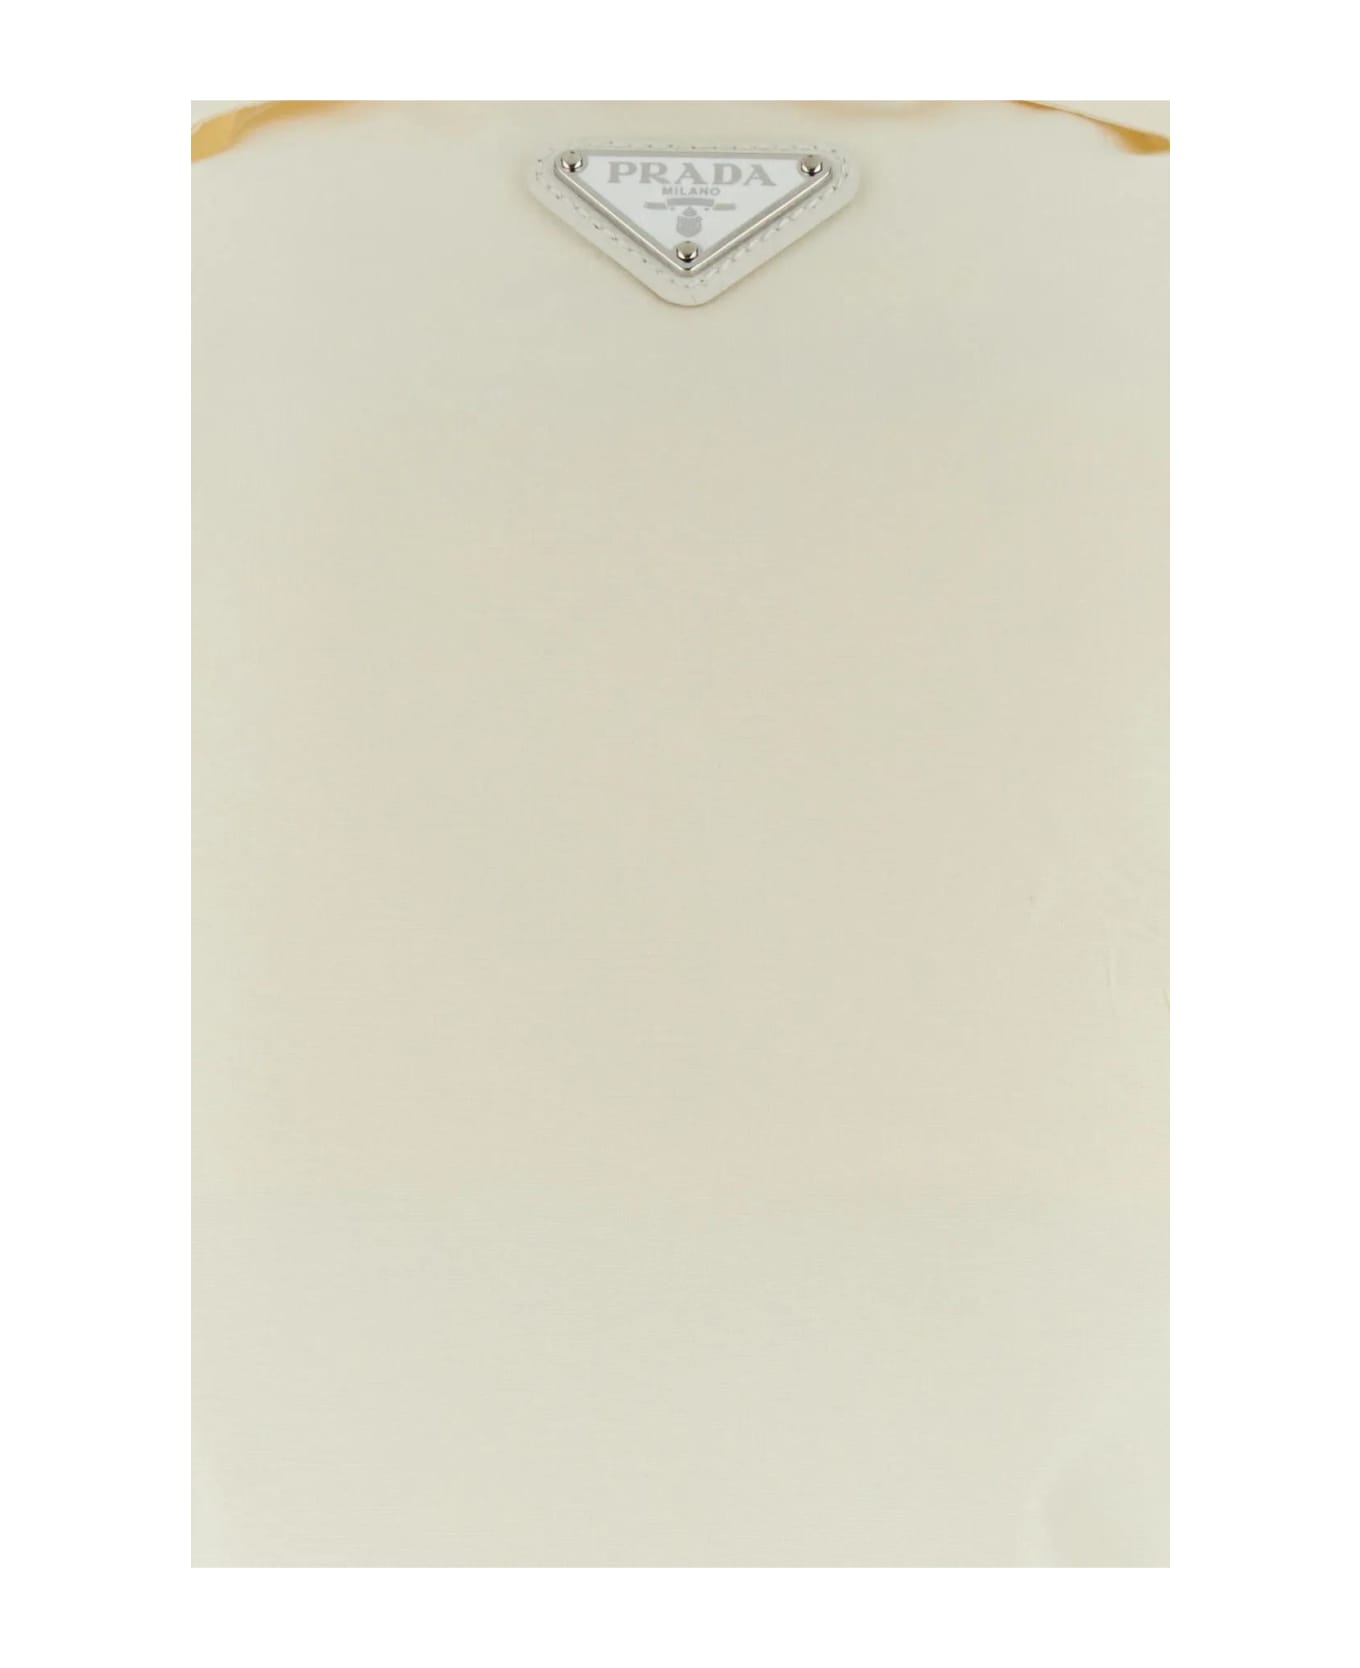 Prada Ivory Faille Top - White